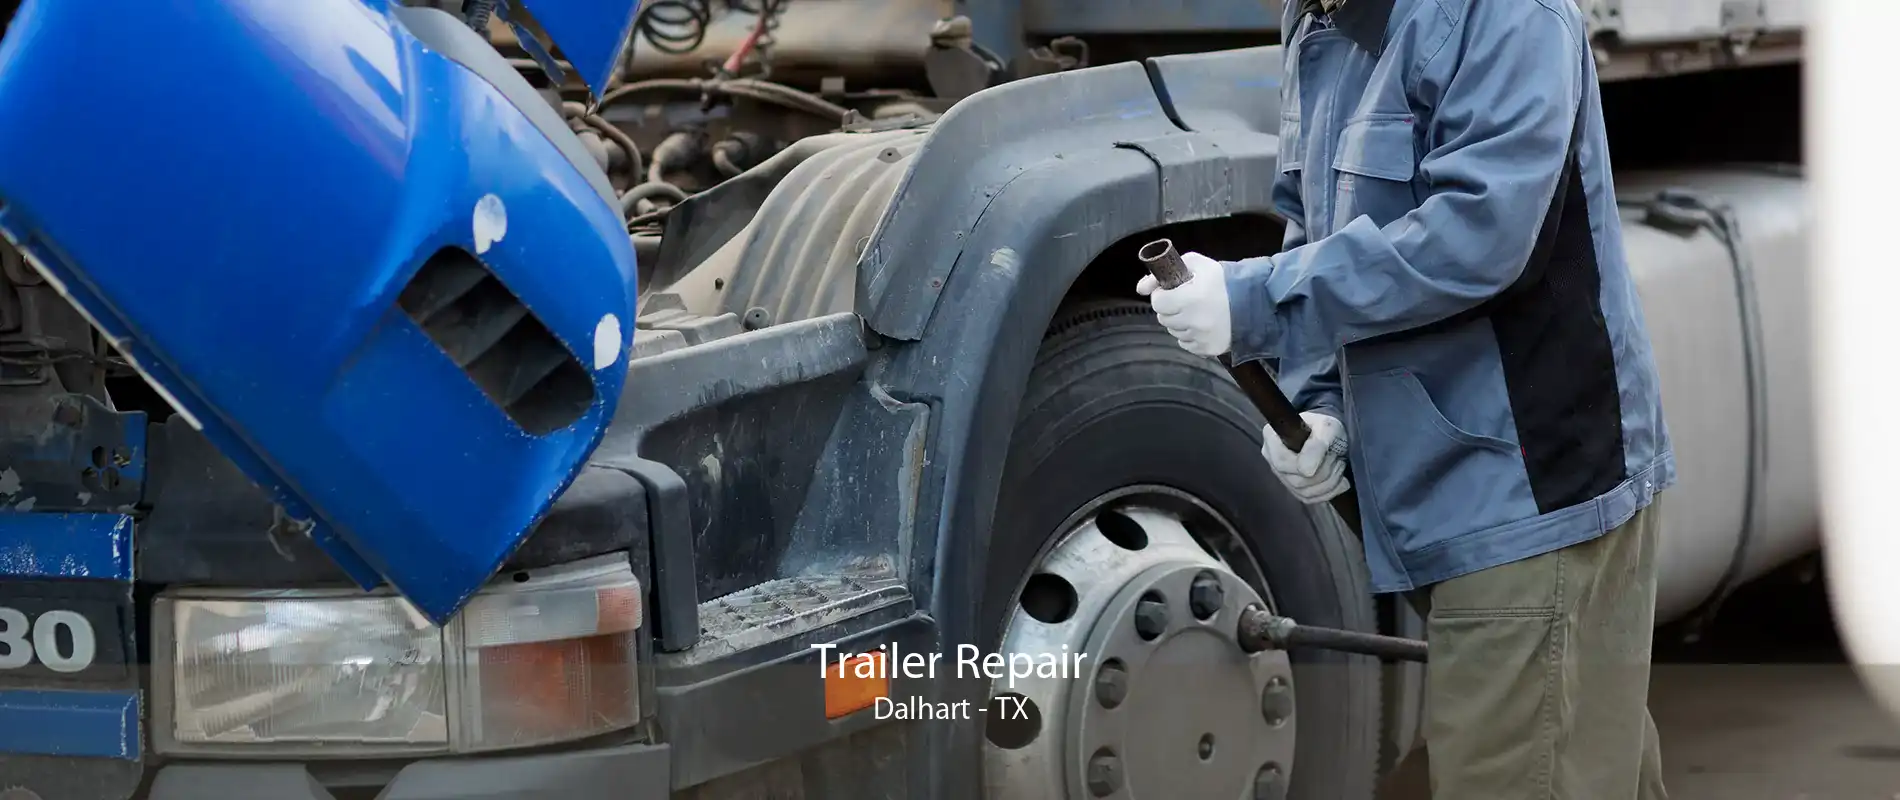 Trailer Repair Dalhart - TX